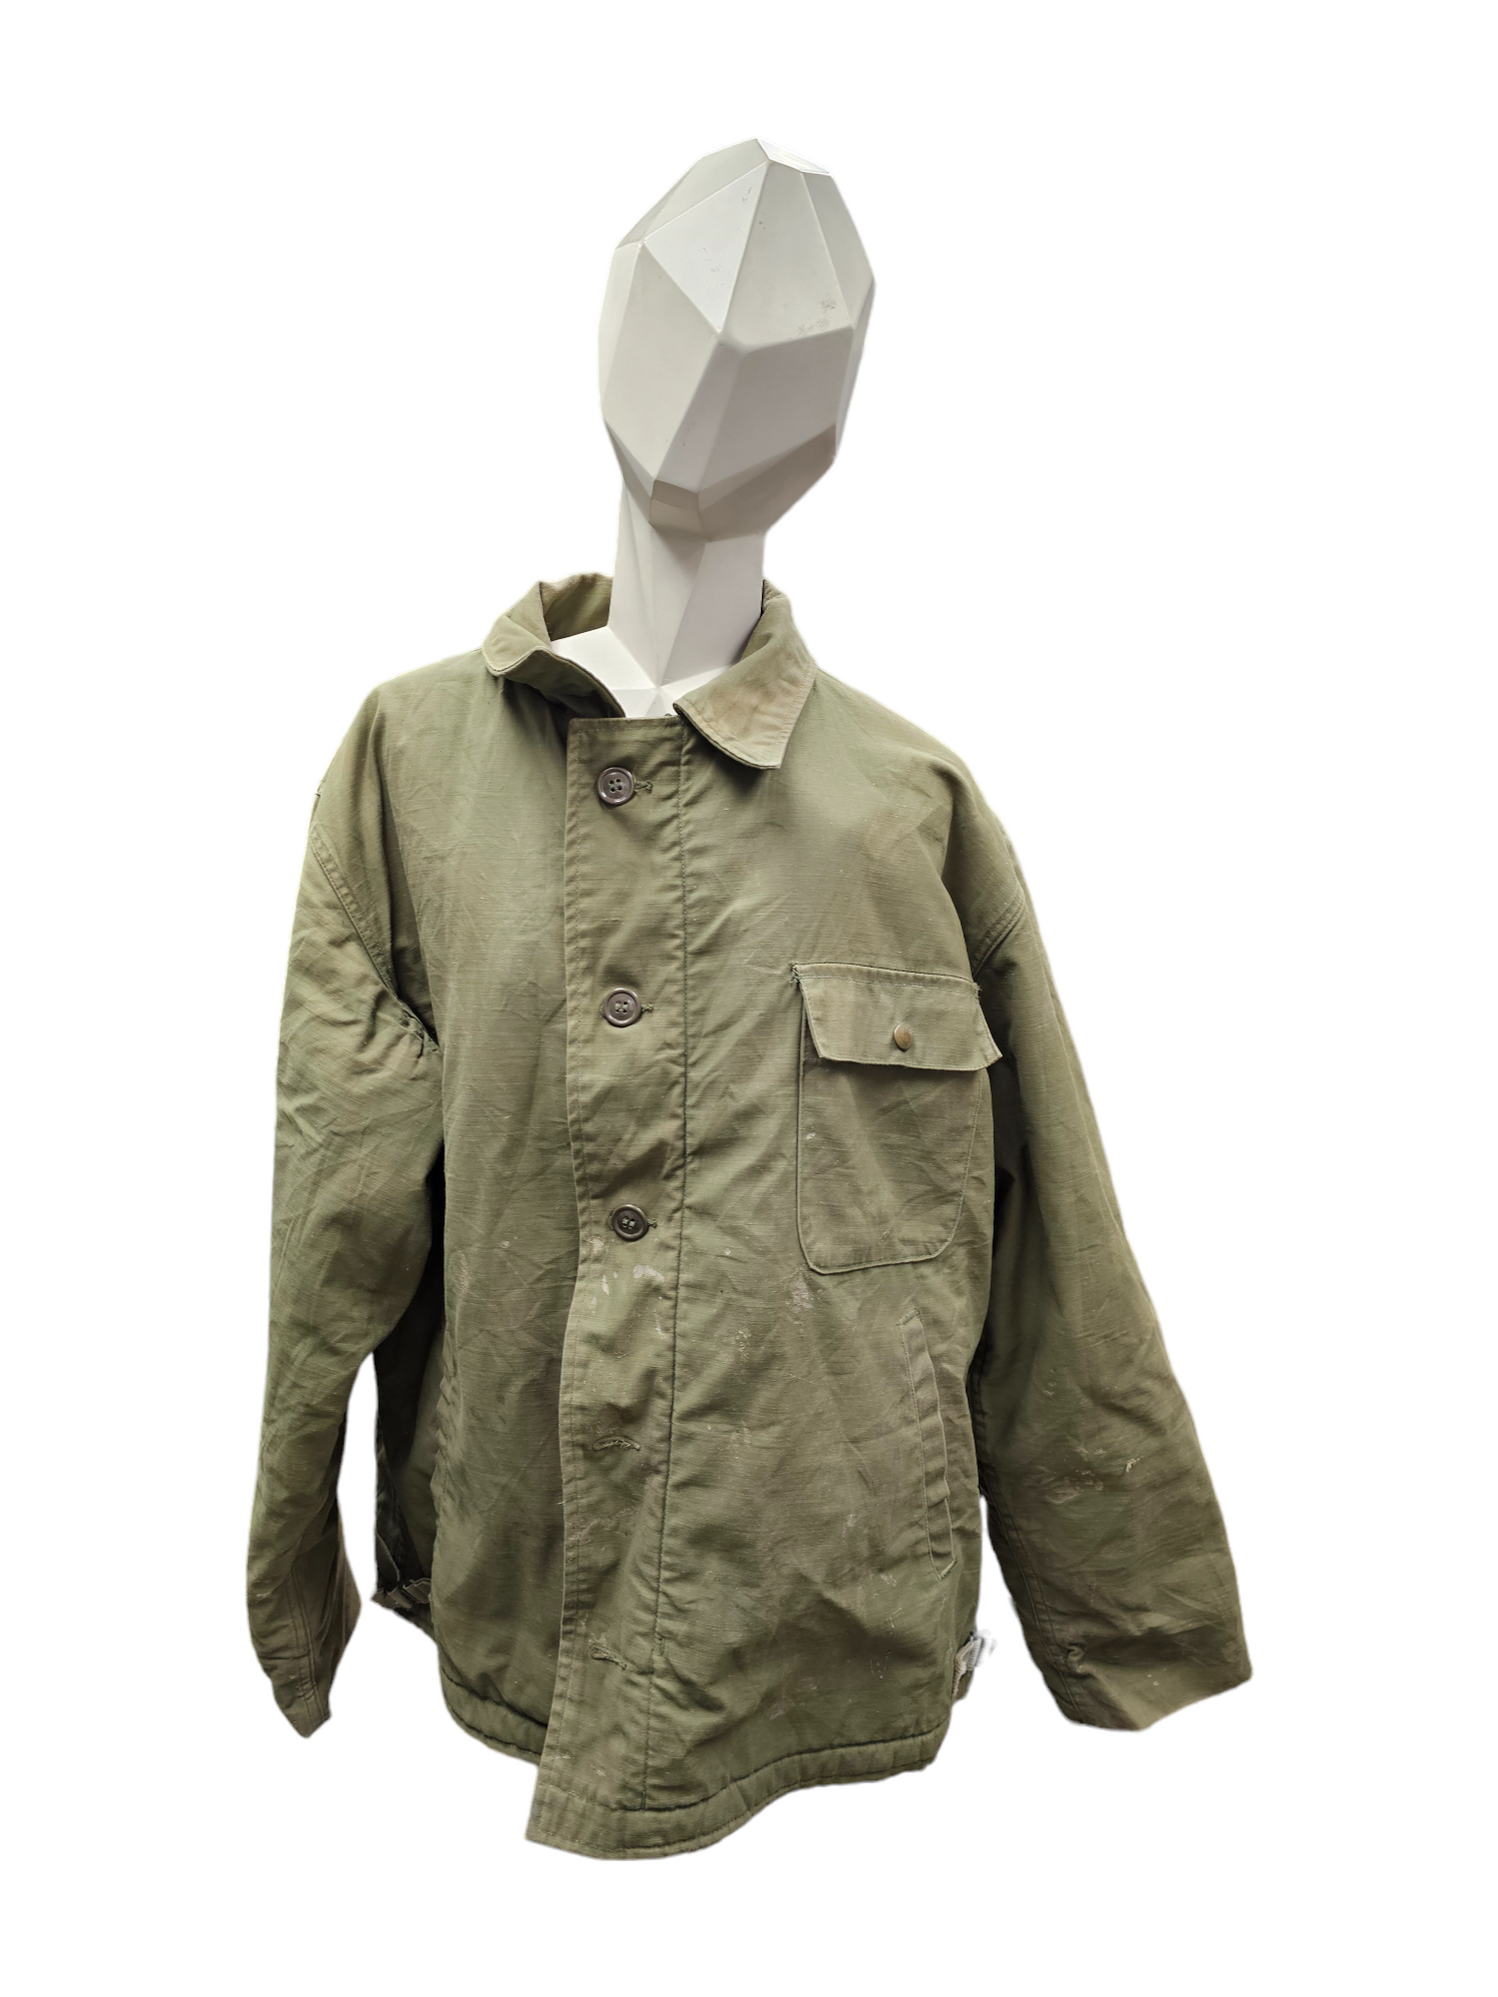 Vintage U.S. Armed Forces Cold Weather Deck Jacket - Large